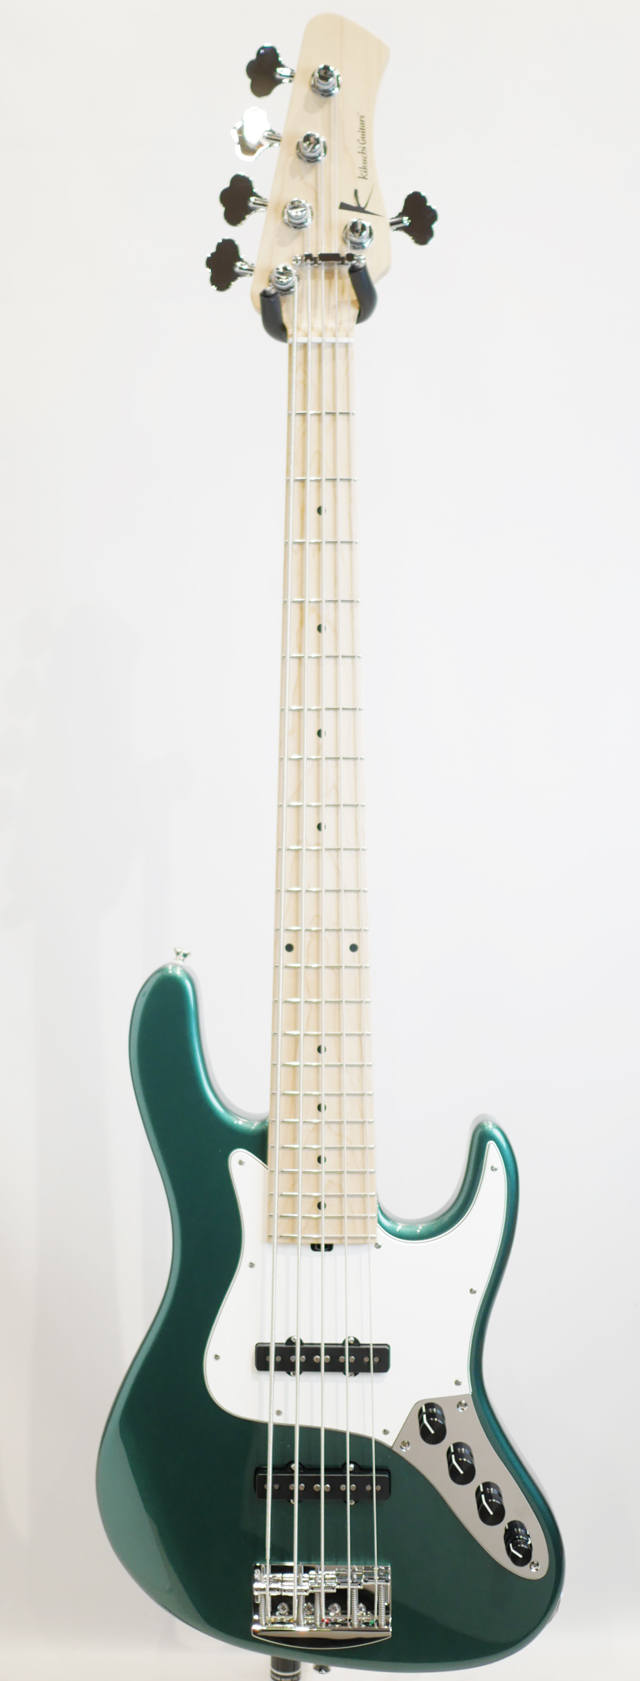 Kikuchi Guitars Hermes Series MV5 / British Racing Green サブ画像2